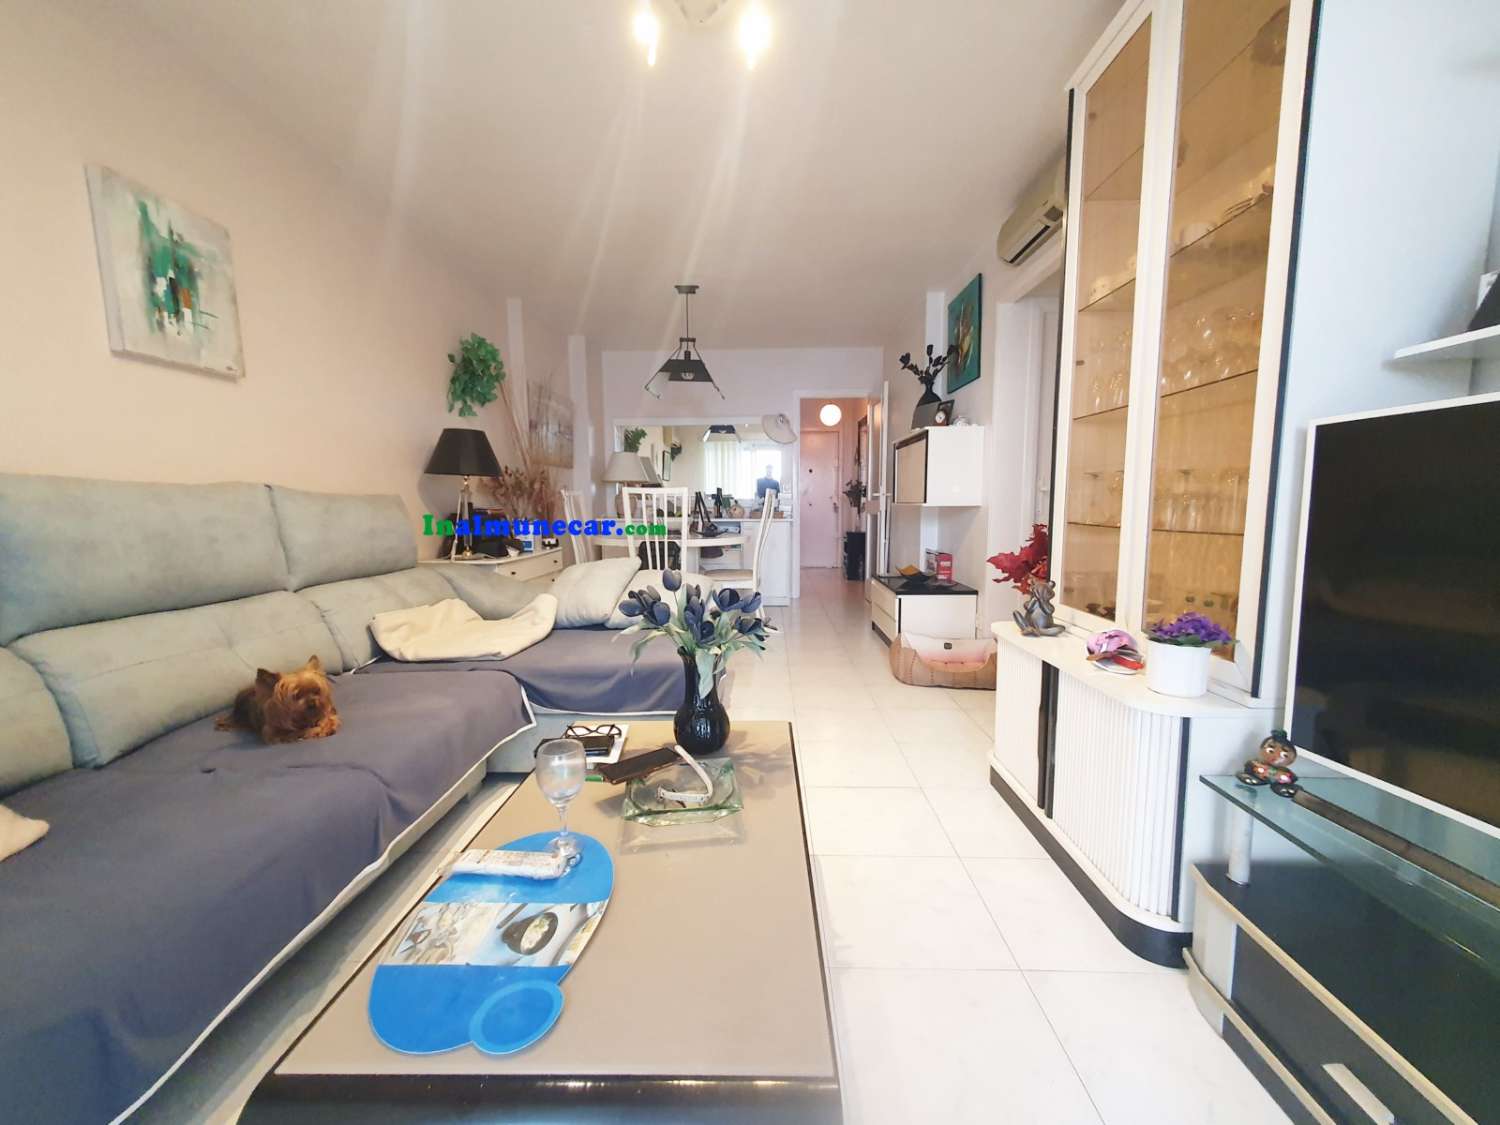 Apartamento con plaza de garaje en venta  en primera línea de playa , Paseo de Cotobro, Almuñécar, Costa Tropical.